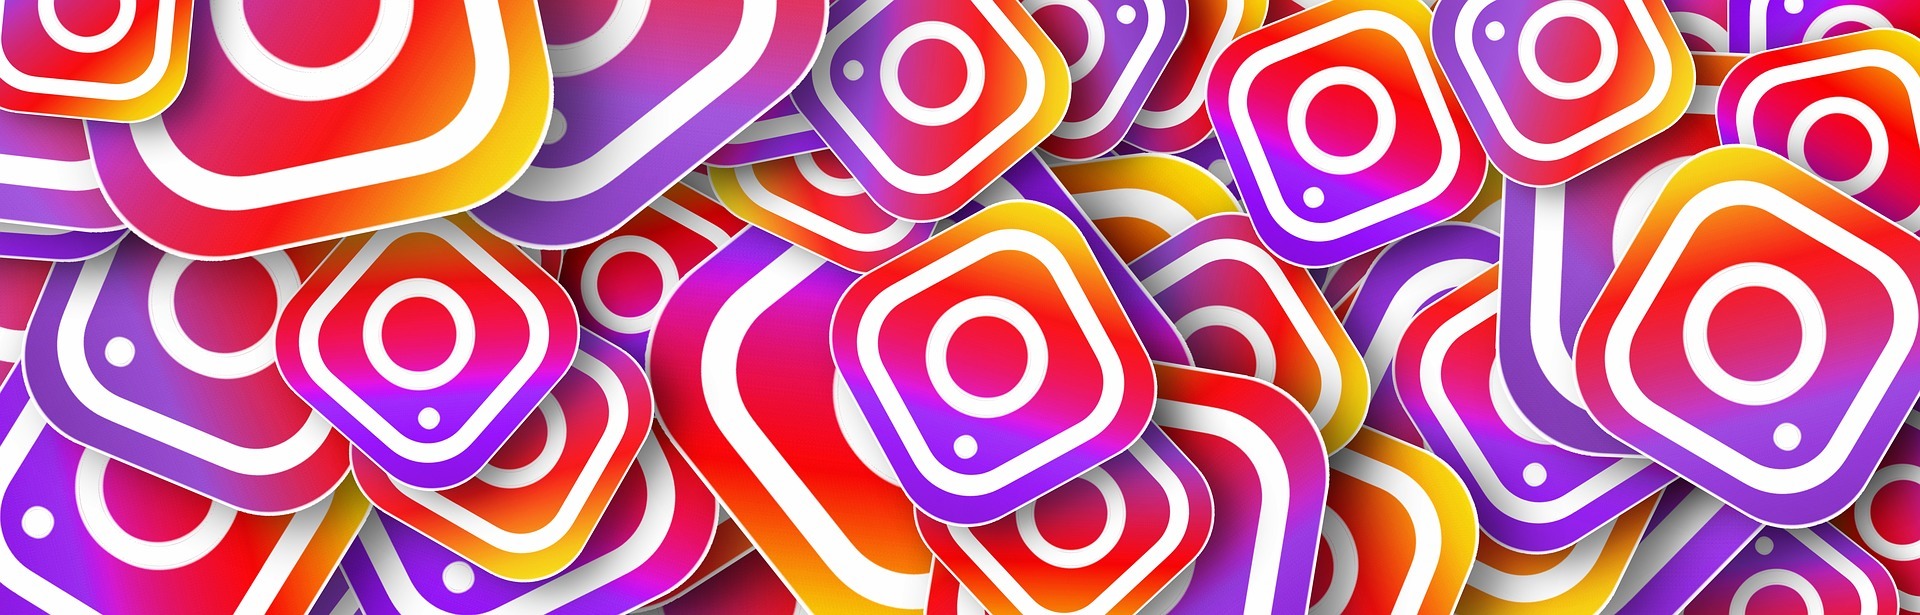 Motaje con varios logos de la red social Instagram, que pertenece a Facebook